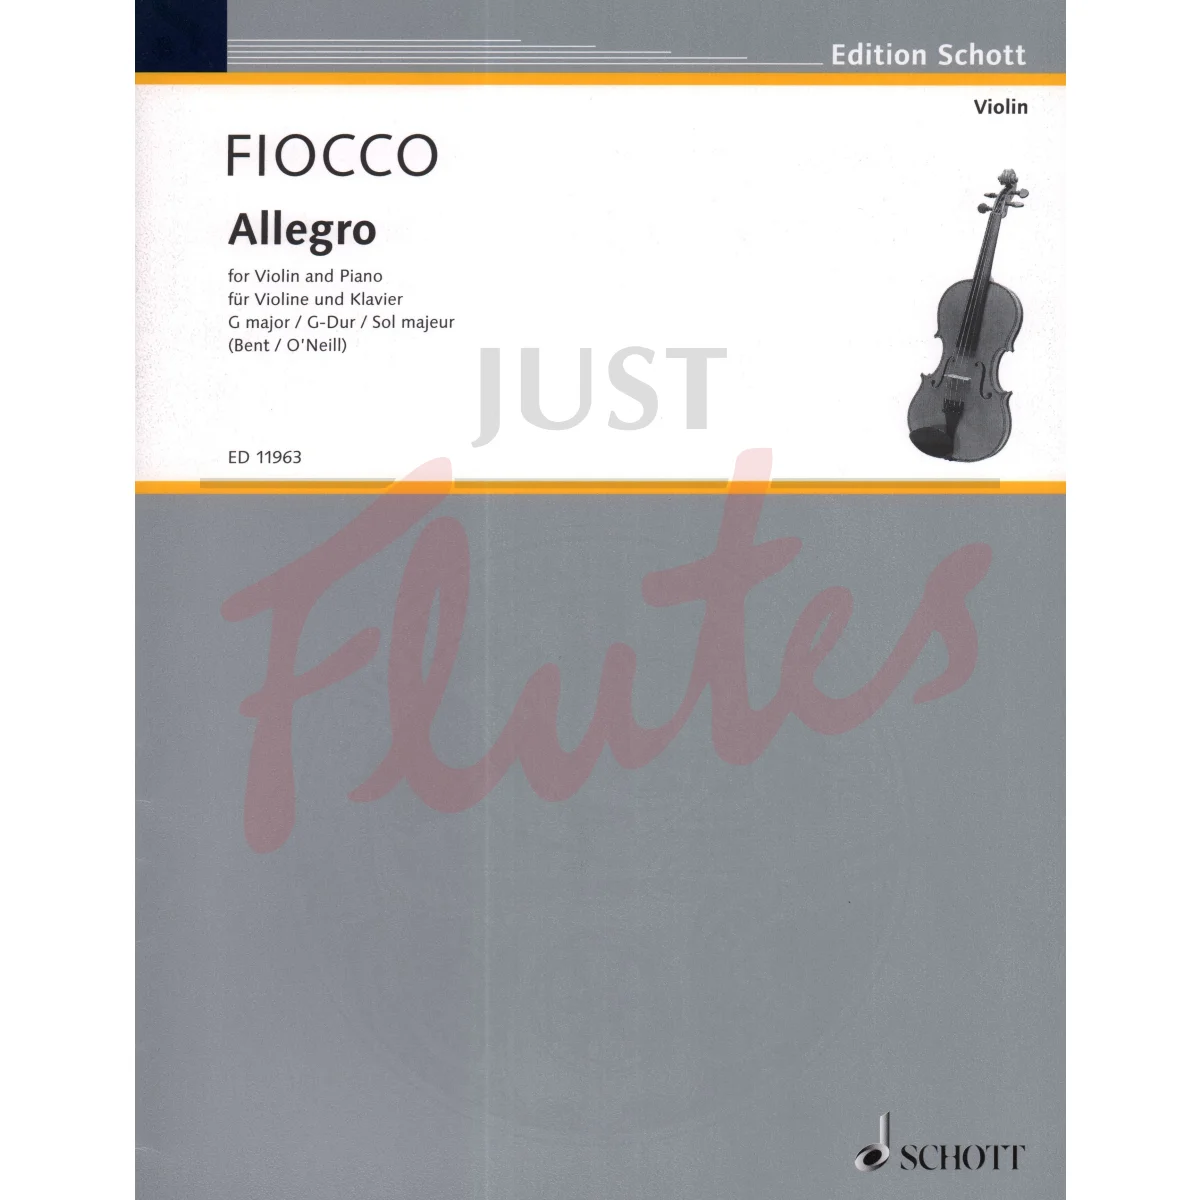 Allegro for Violin and Piano